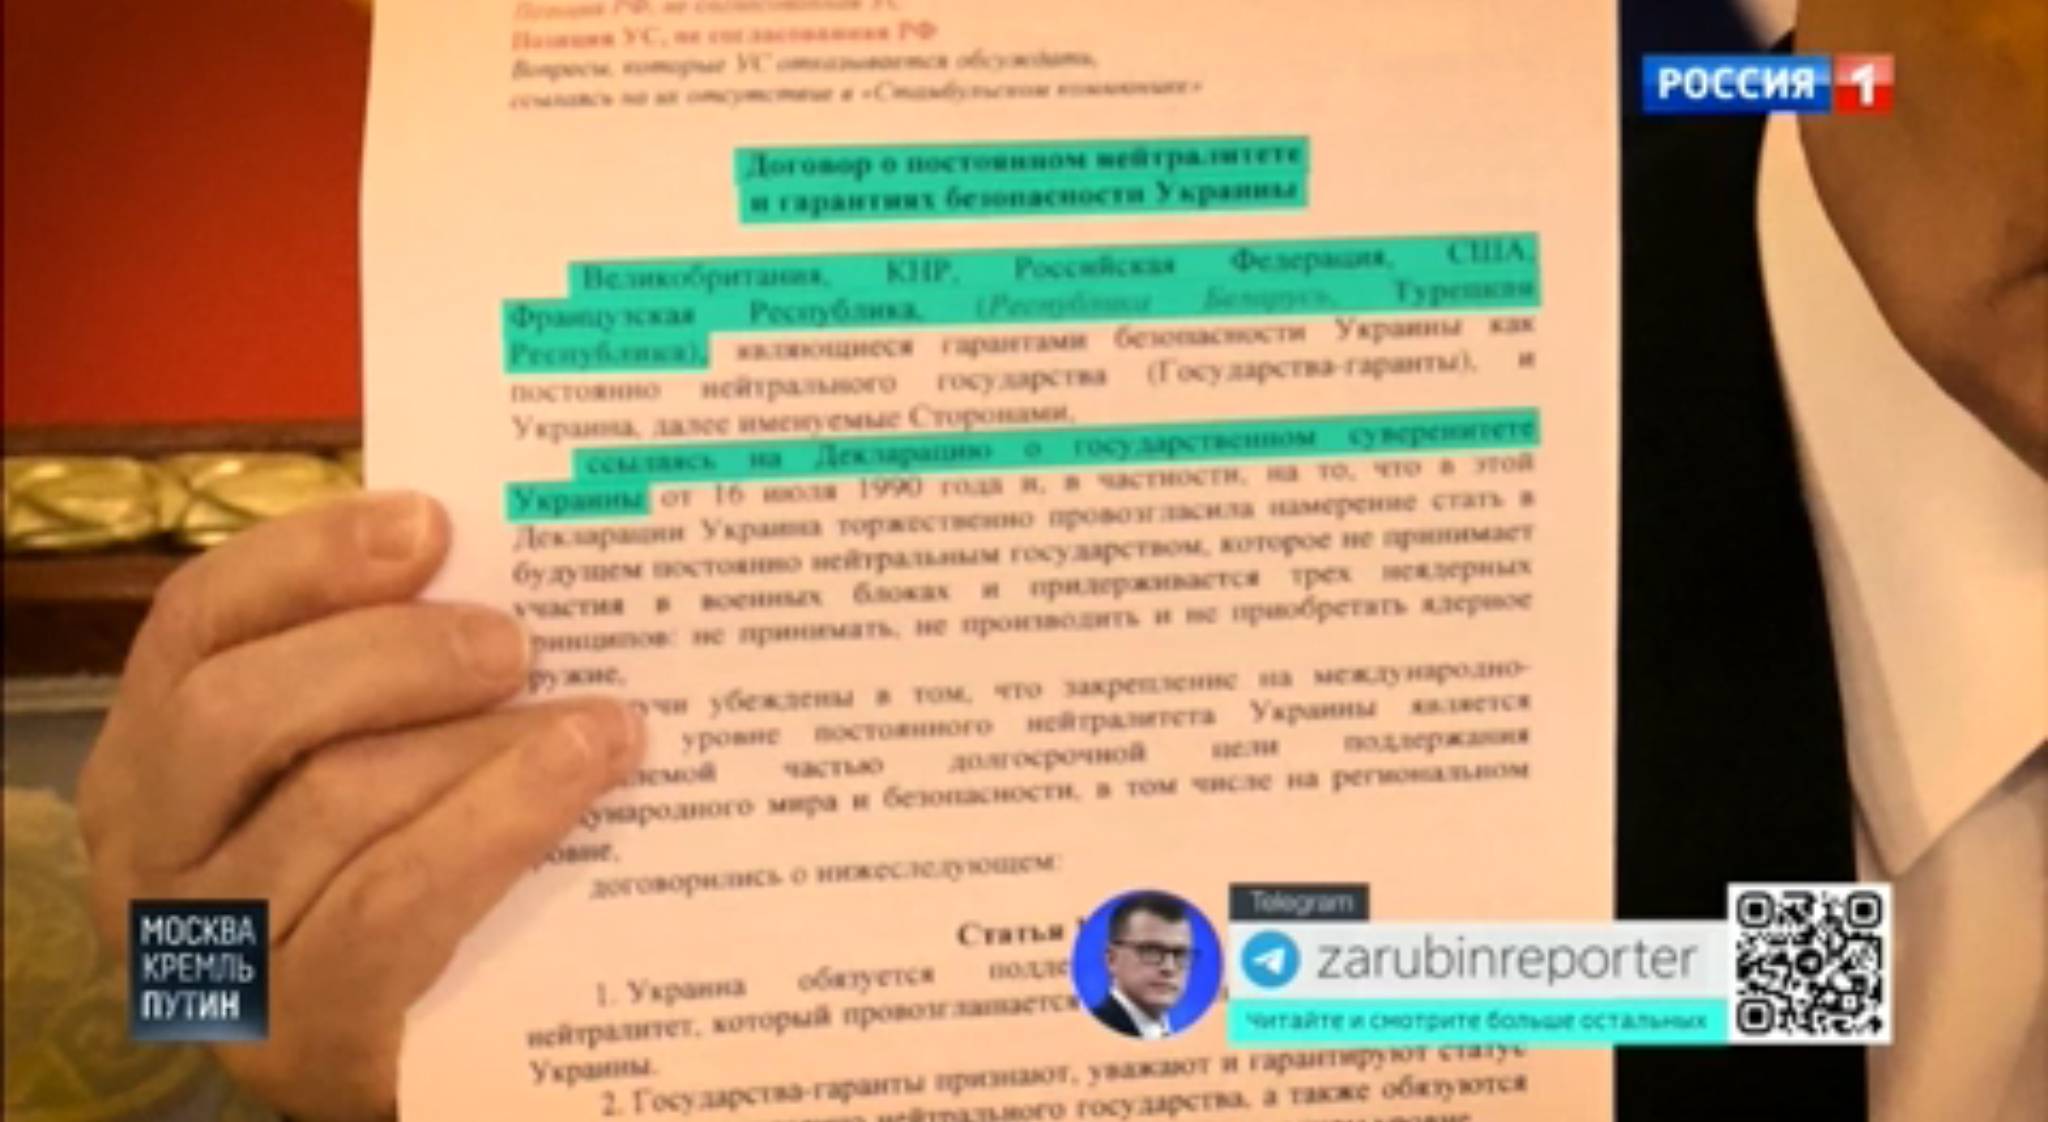 Powiększenie dokumentu pokazane przez telewizję. Dokument jest po rosyjsku, tekst jest niewyraźny, wiać jednak tytuł "Dogowor" czyli porozumienie